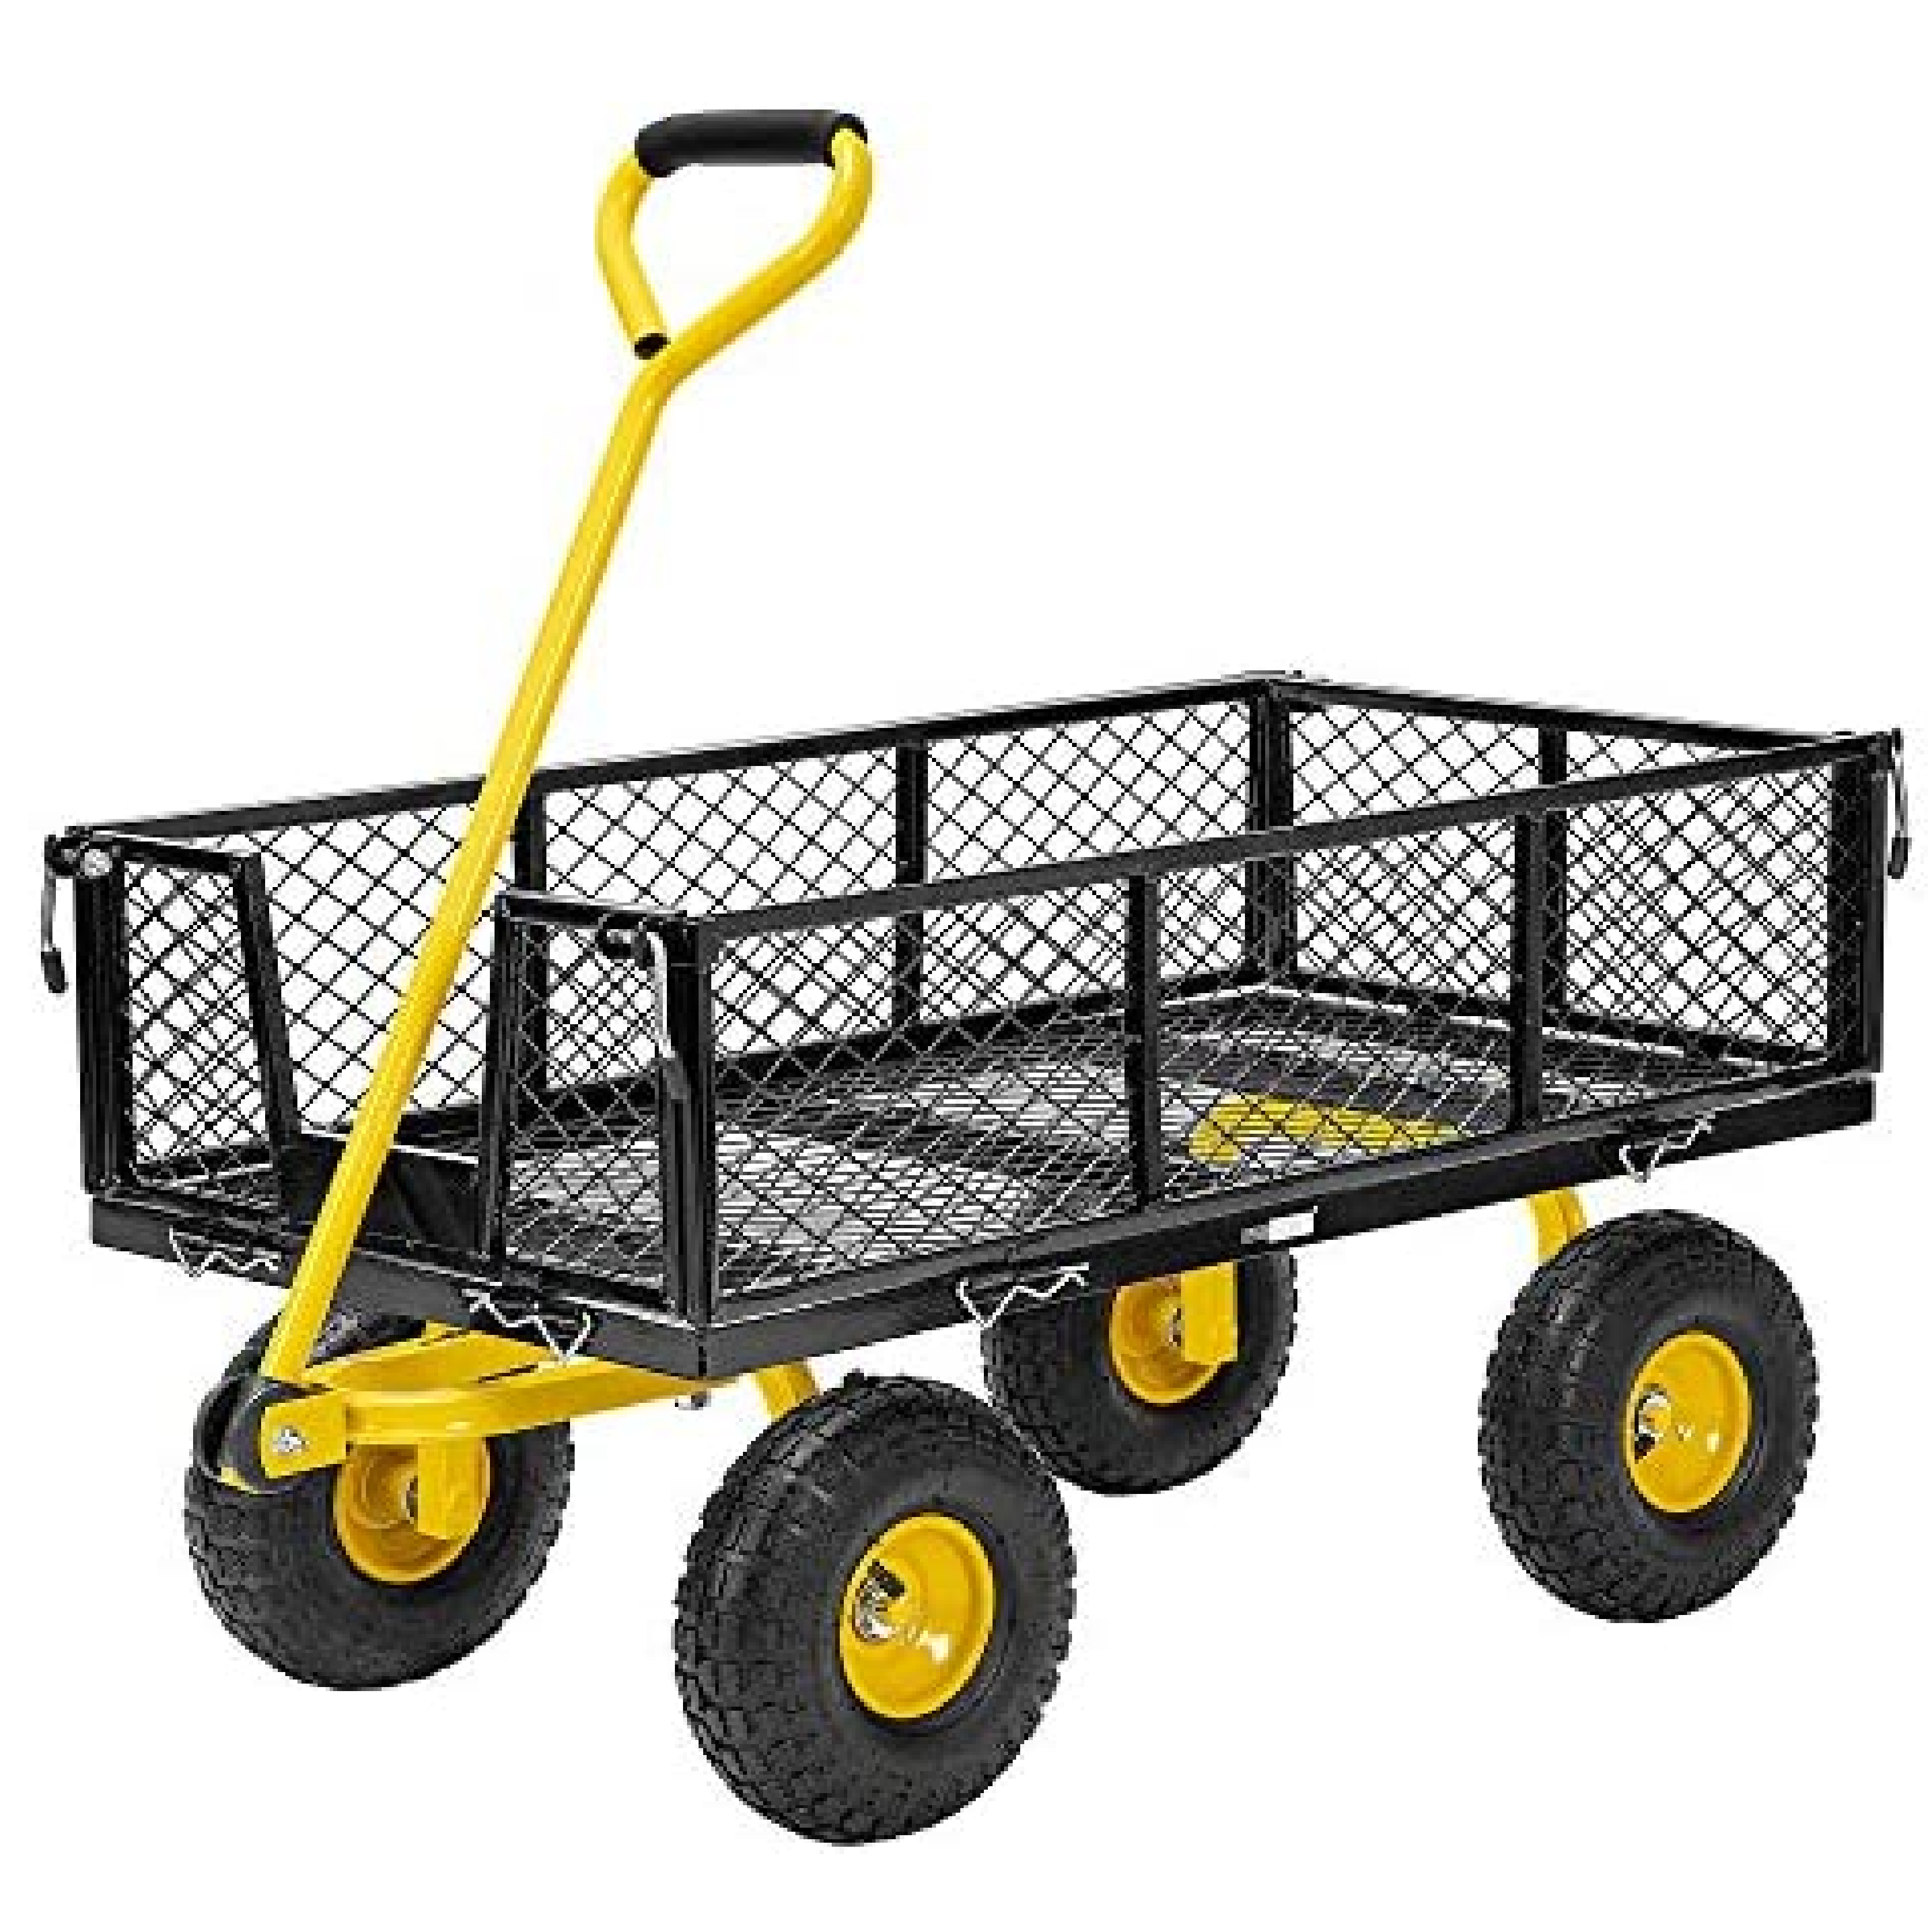 HardwareCity Garden UTILITY STEEL Cart Trolley Heavy Duty 300KG